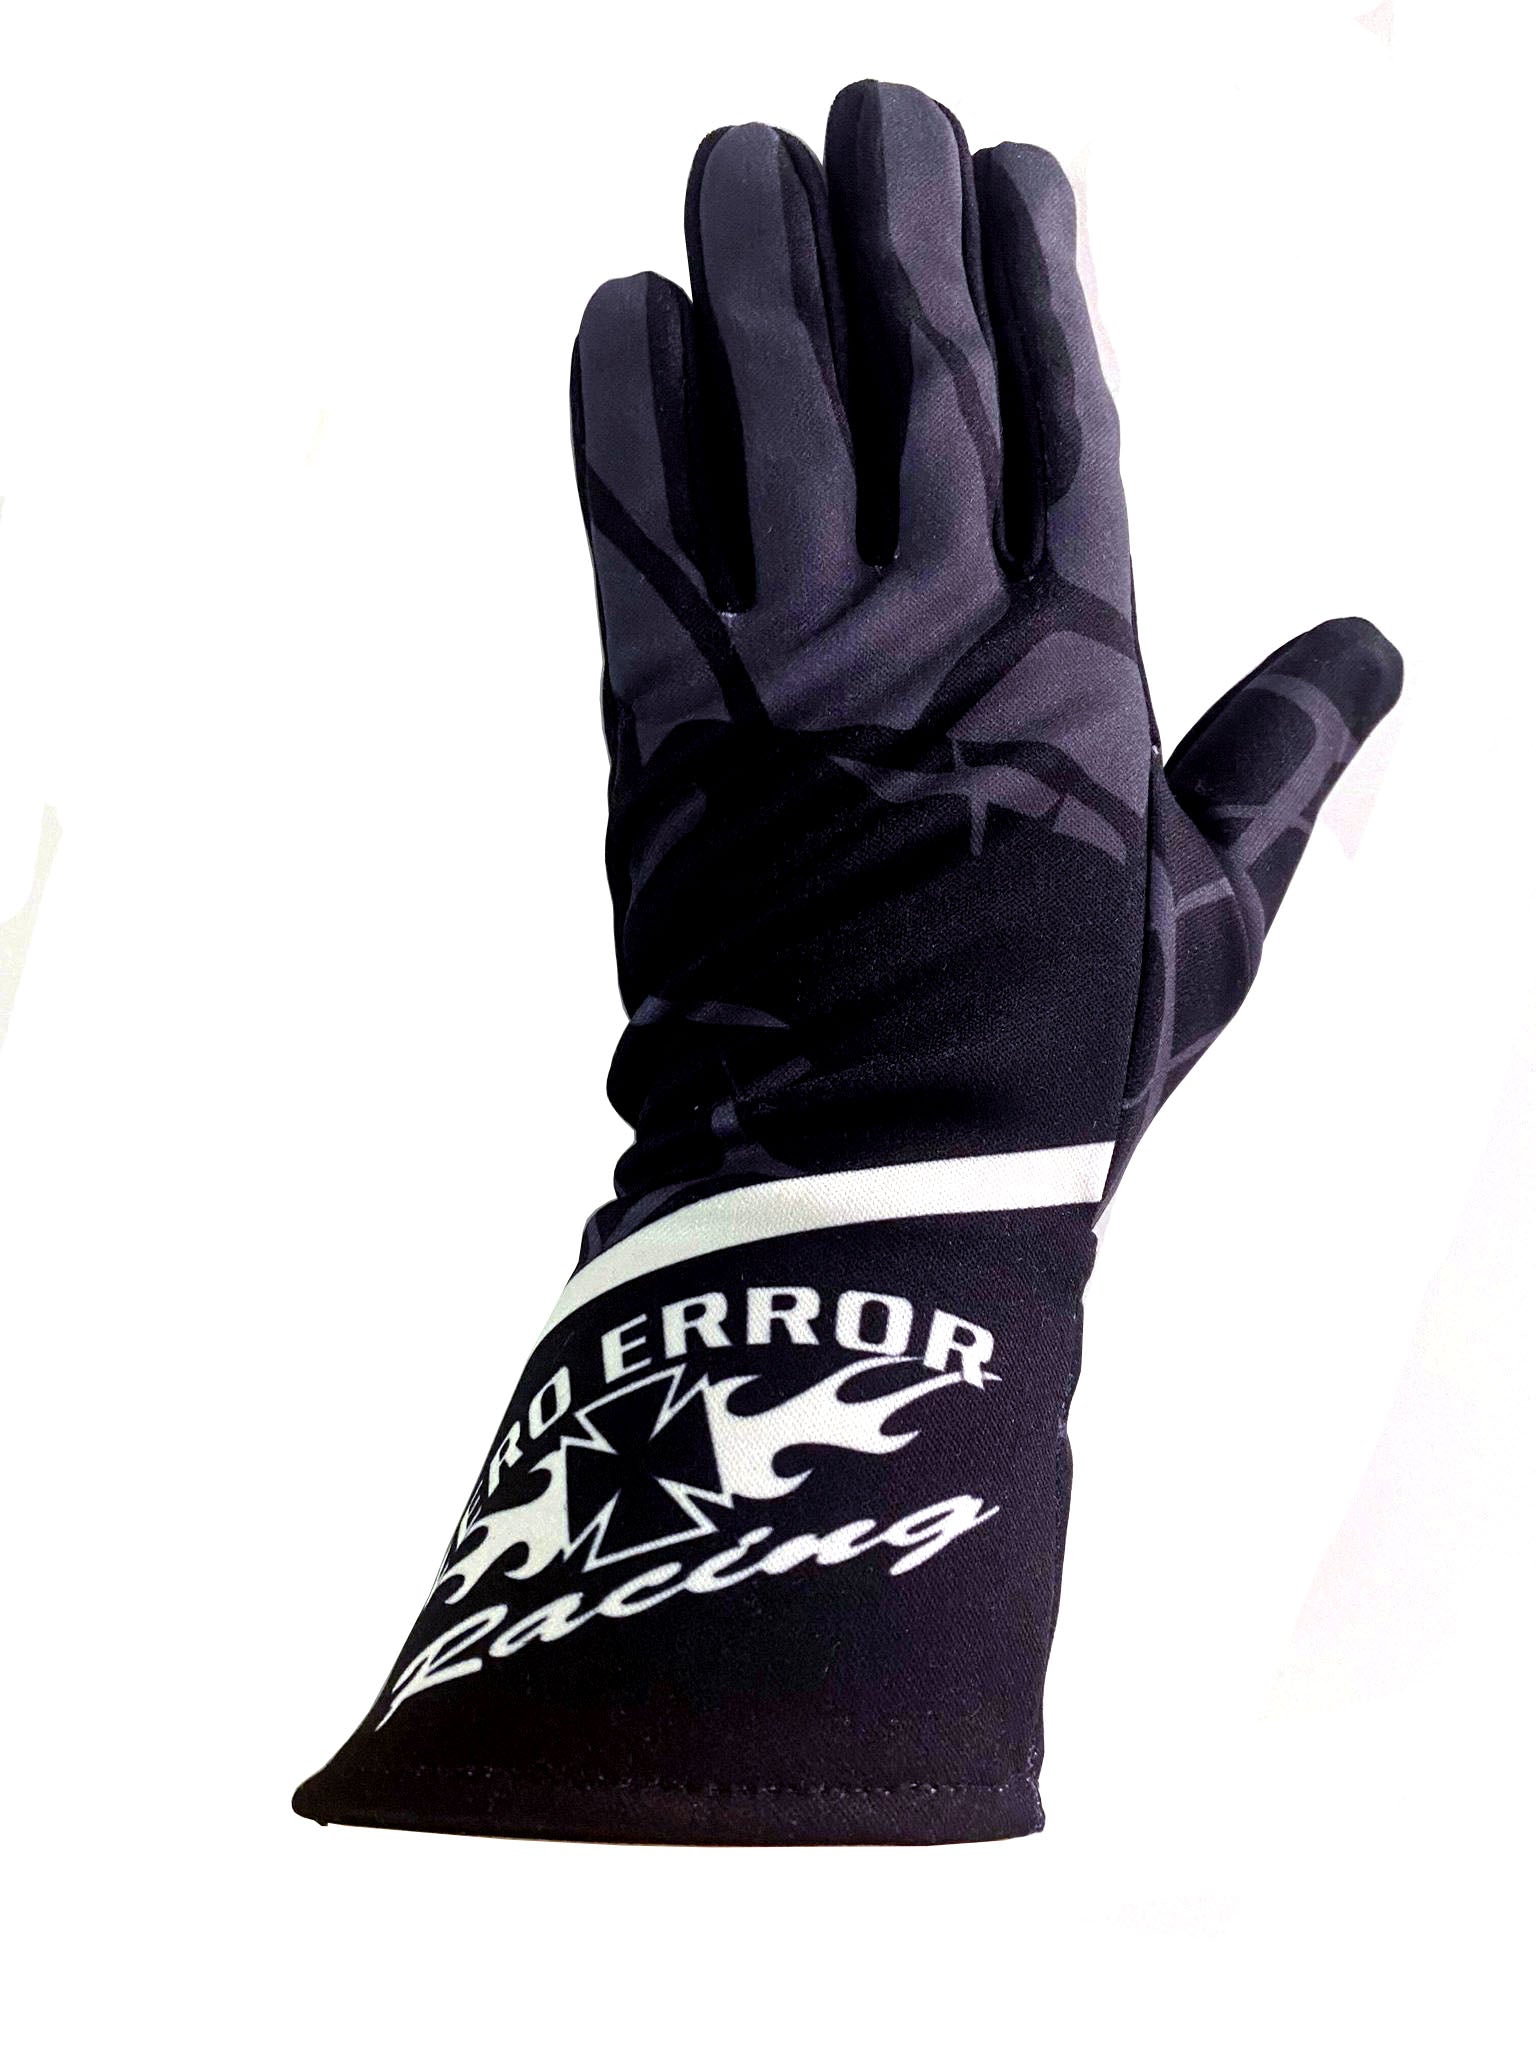 Glove2